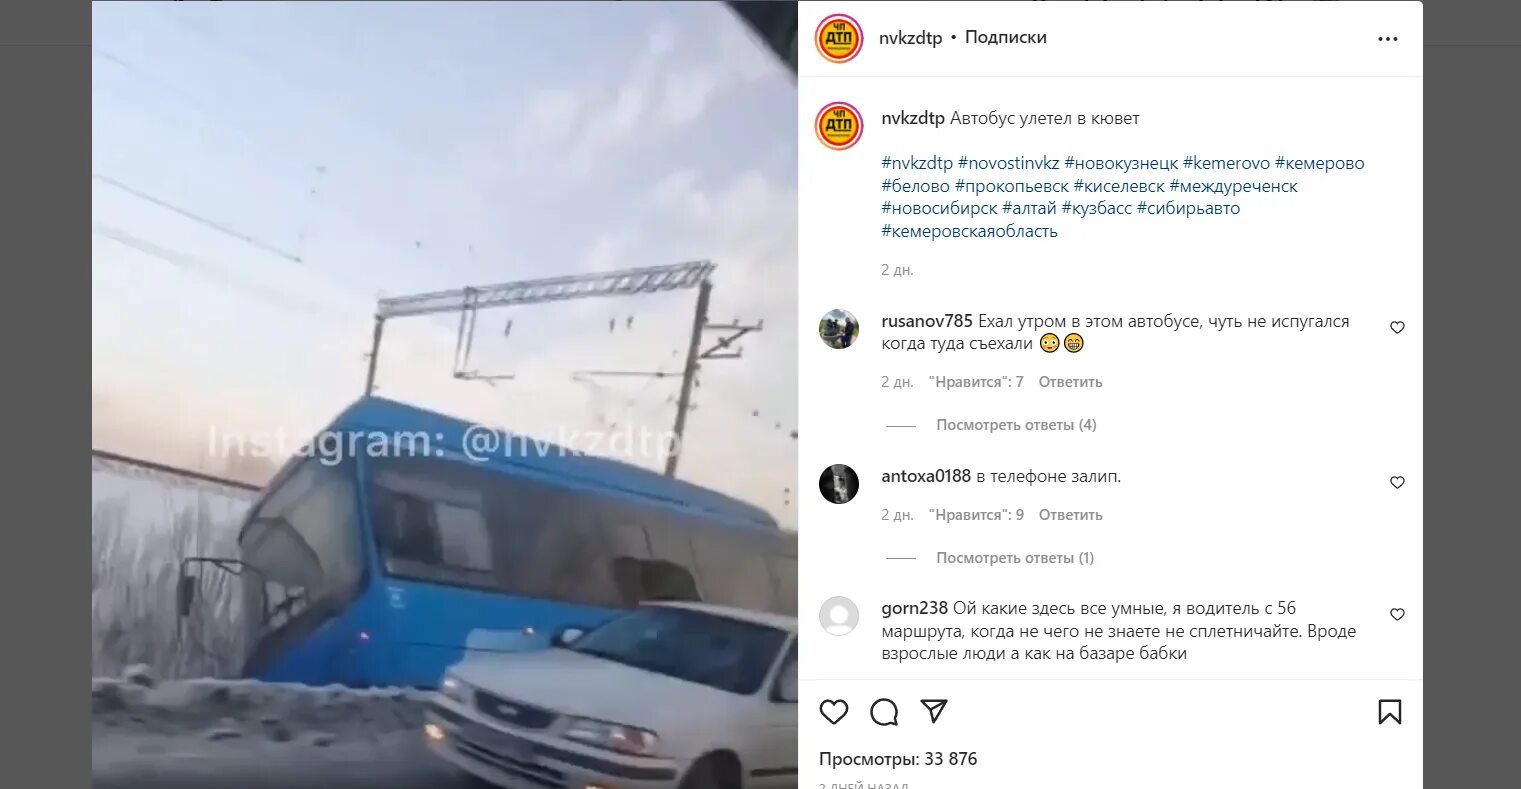 Абагур лесной автобусов 56. Новокузнецк автобус голубой.